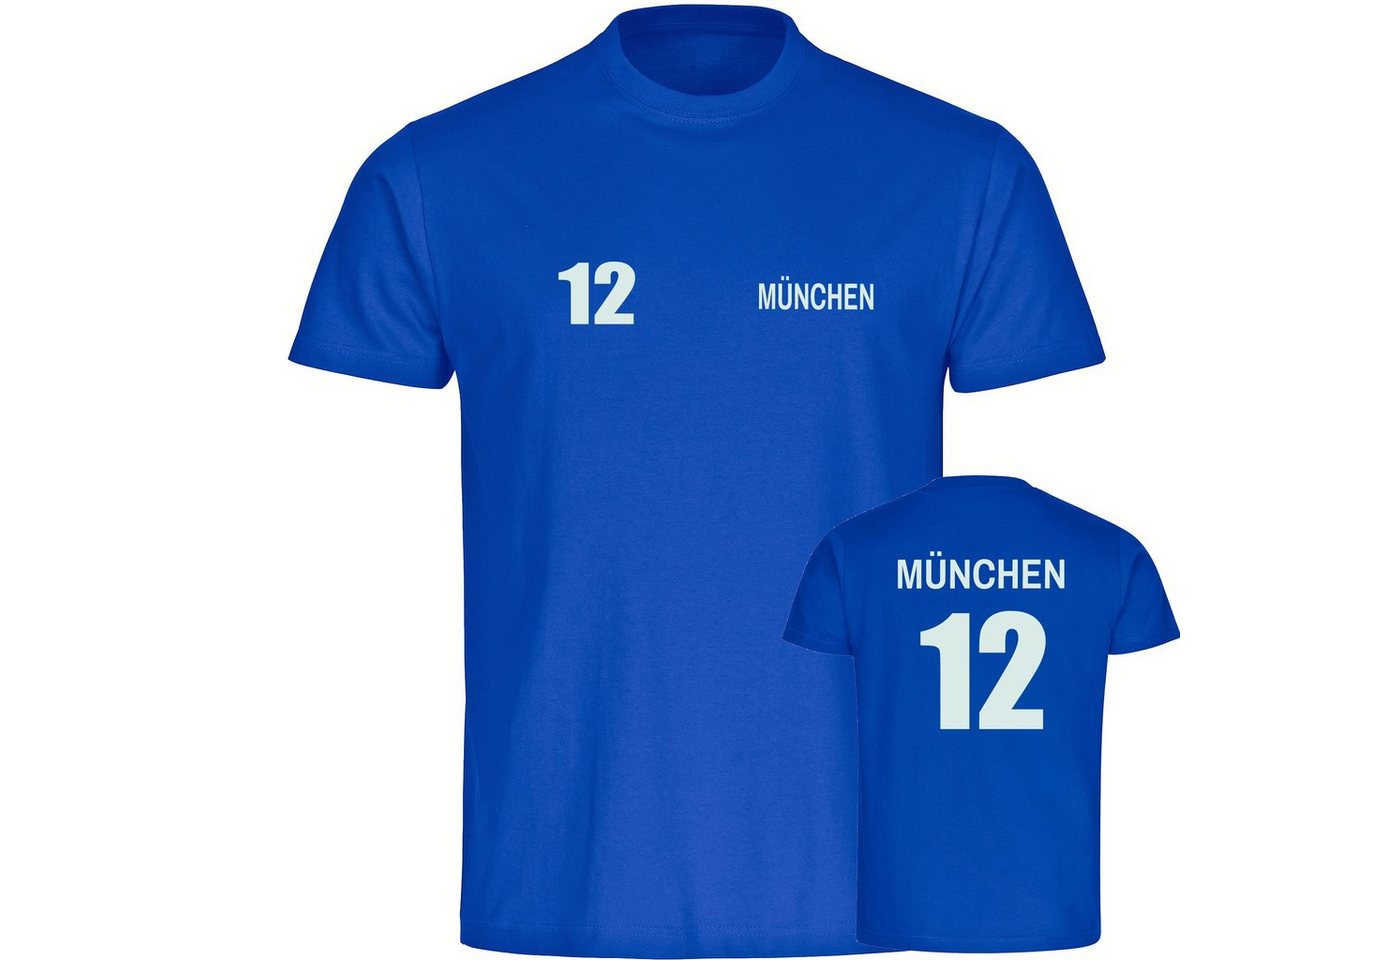 multifanshop T-Shirt Herren München blau - Trikot 12 - Männer von multifanshop